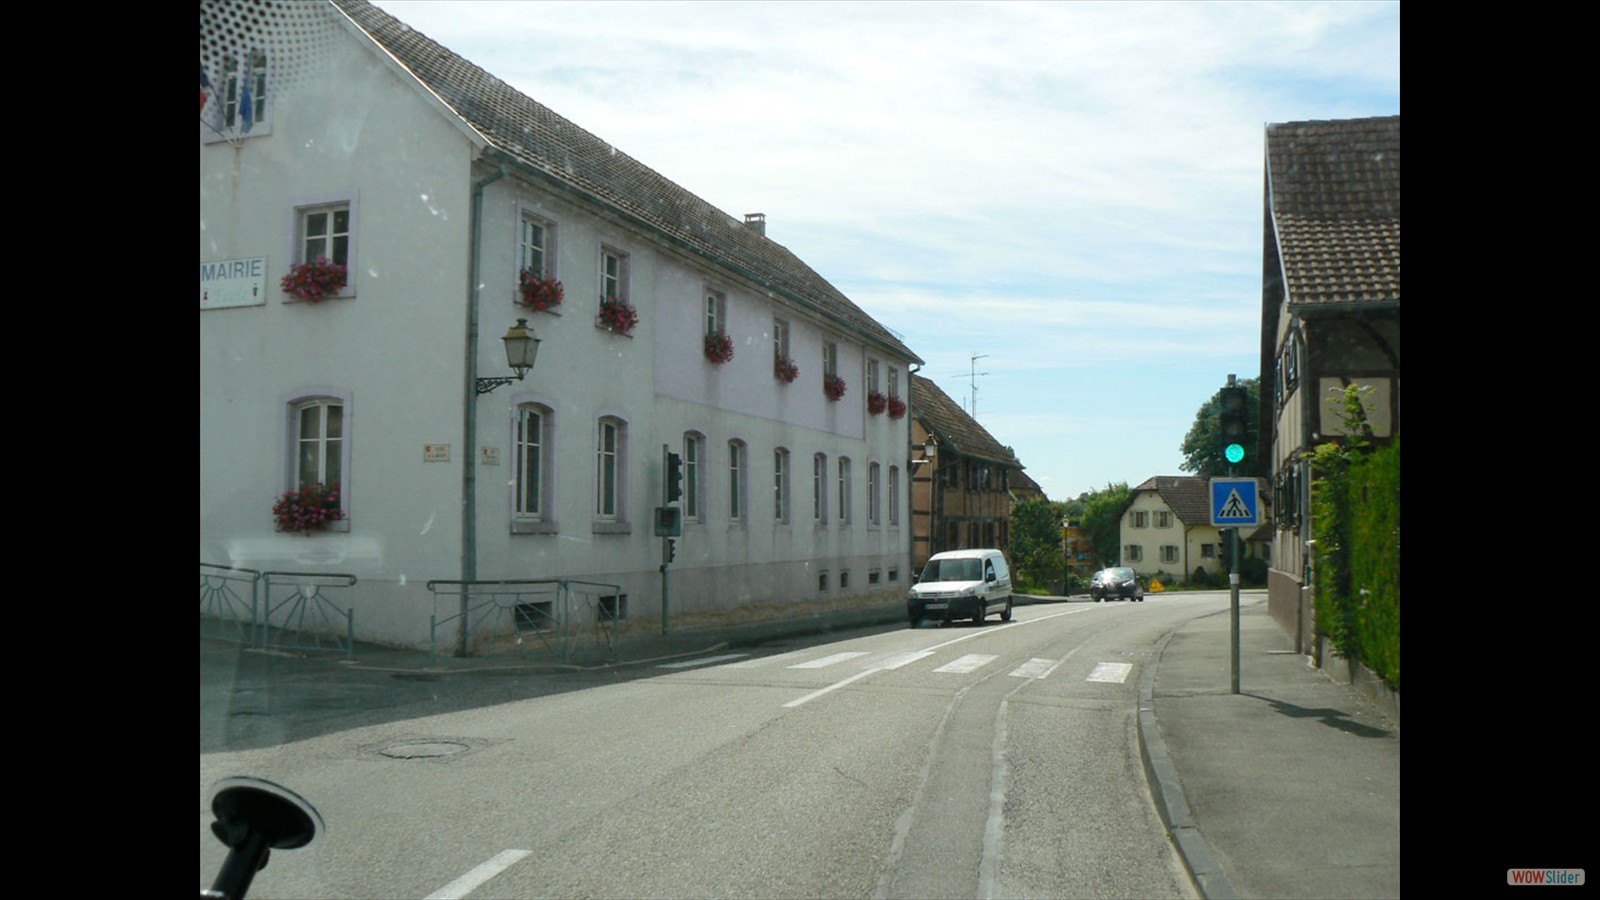 Altkirch.